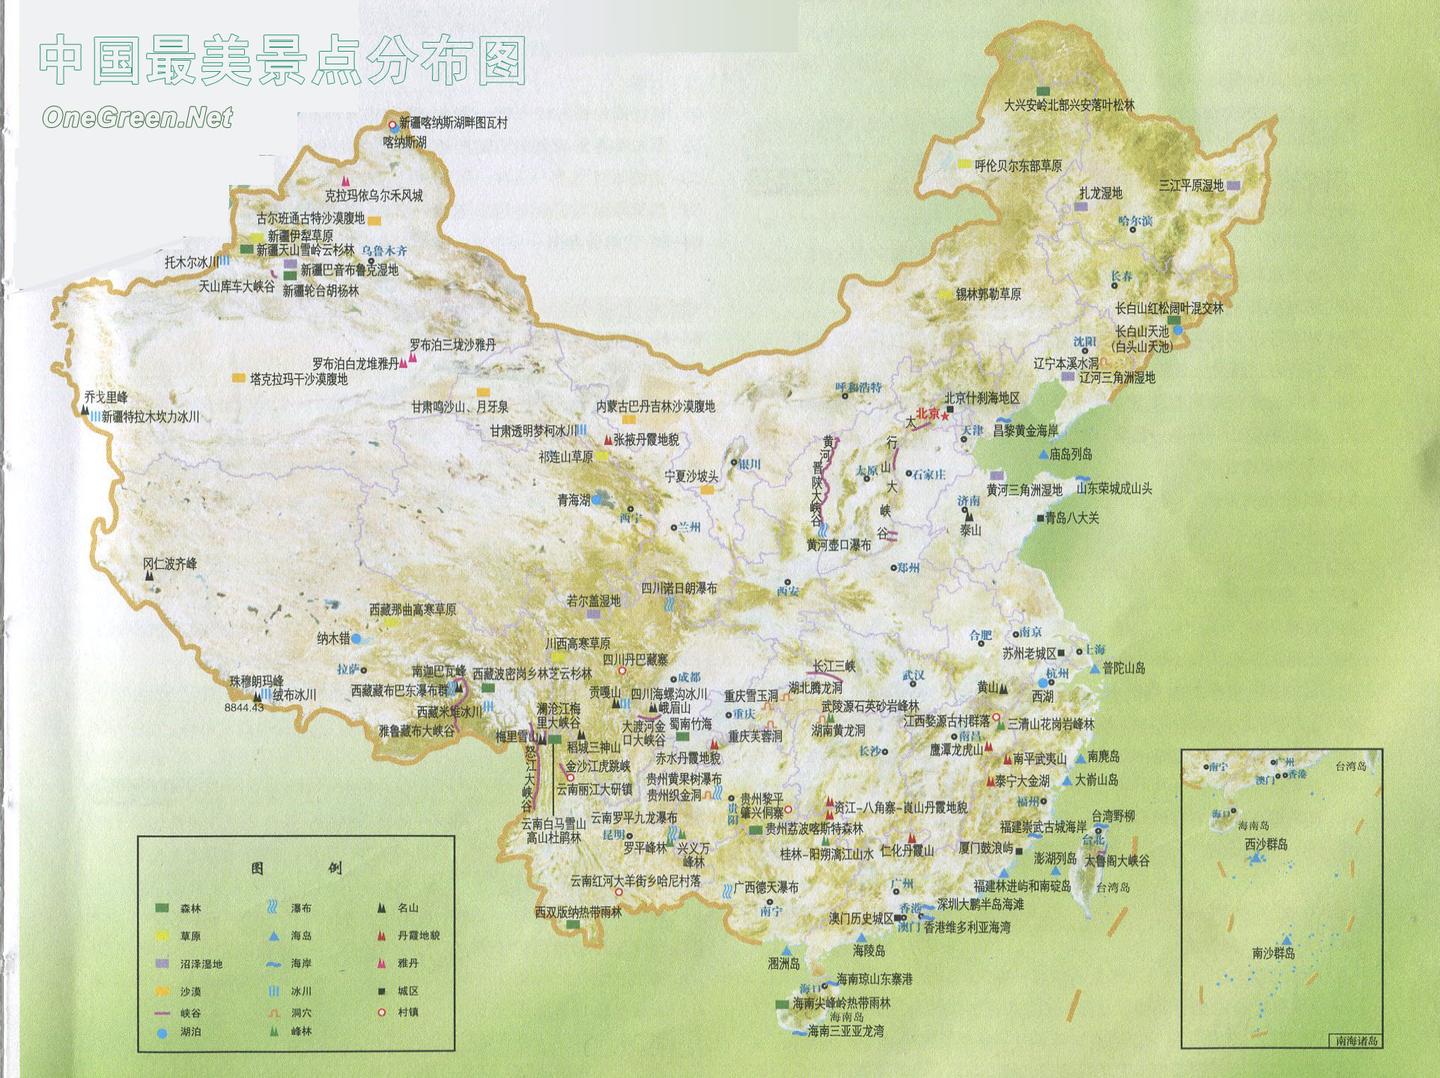 中国最美旅游景点高清地图汇聚3000多个景点可下载收藏